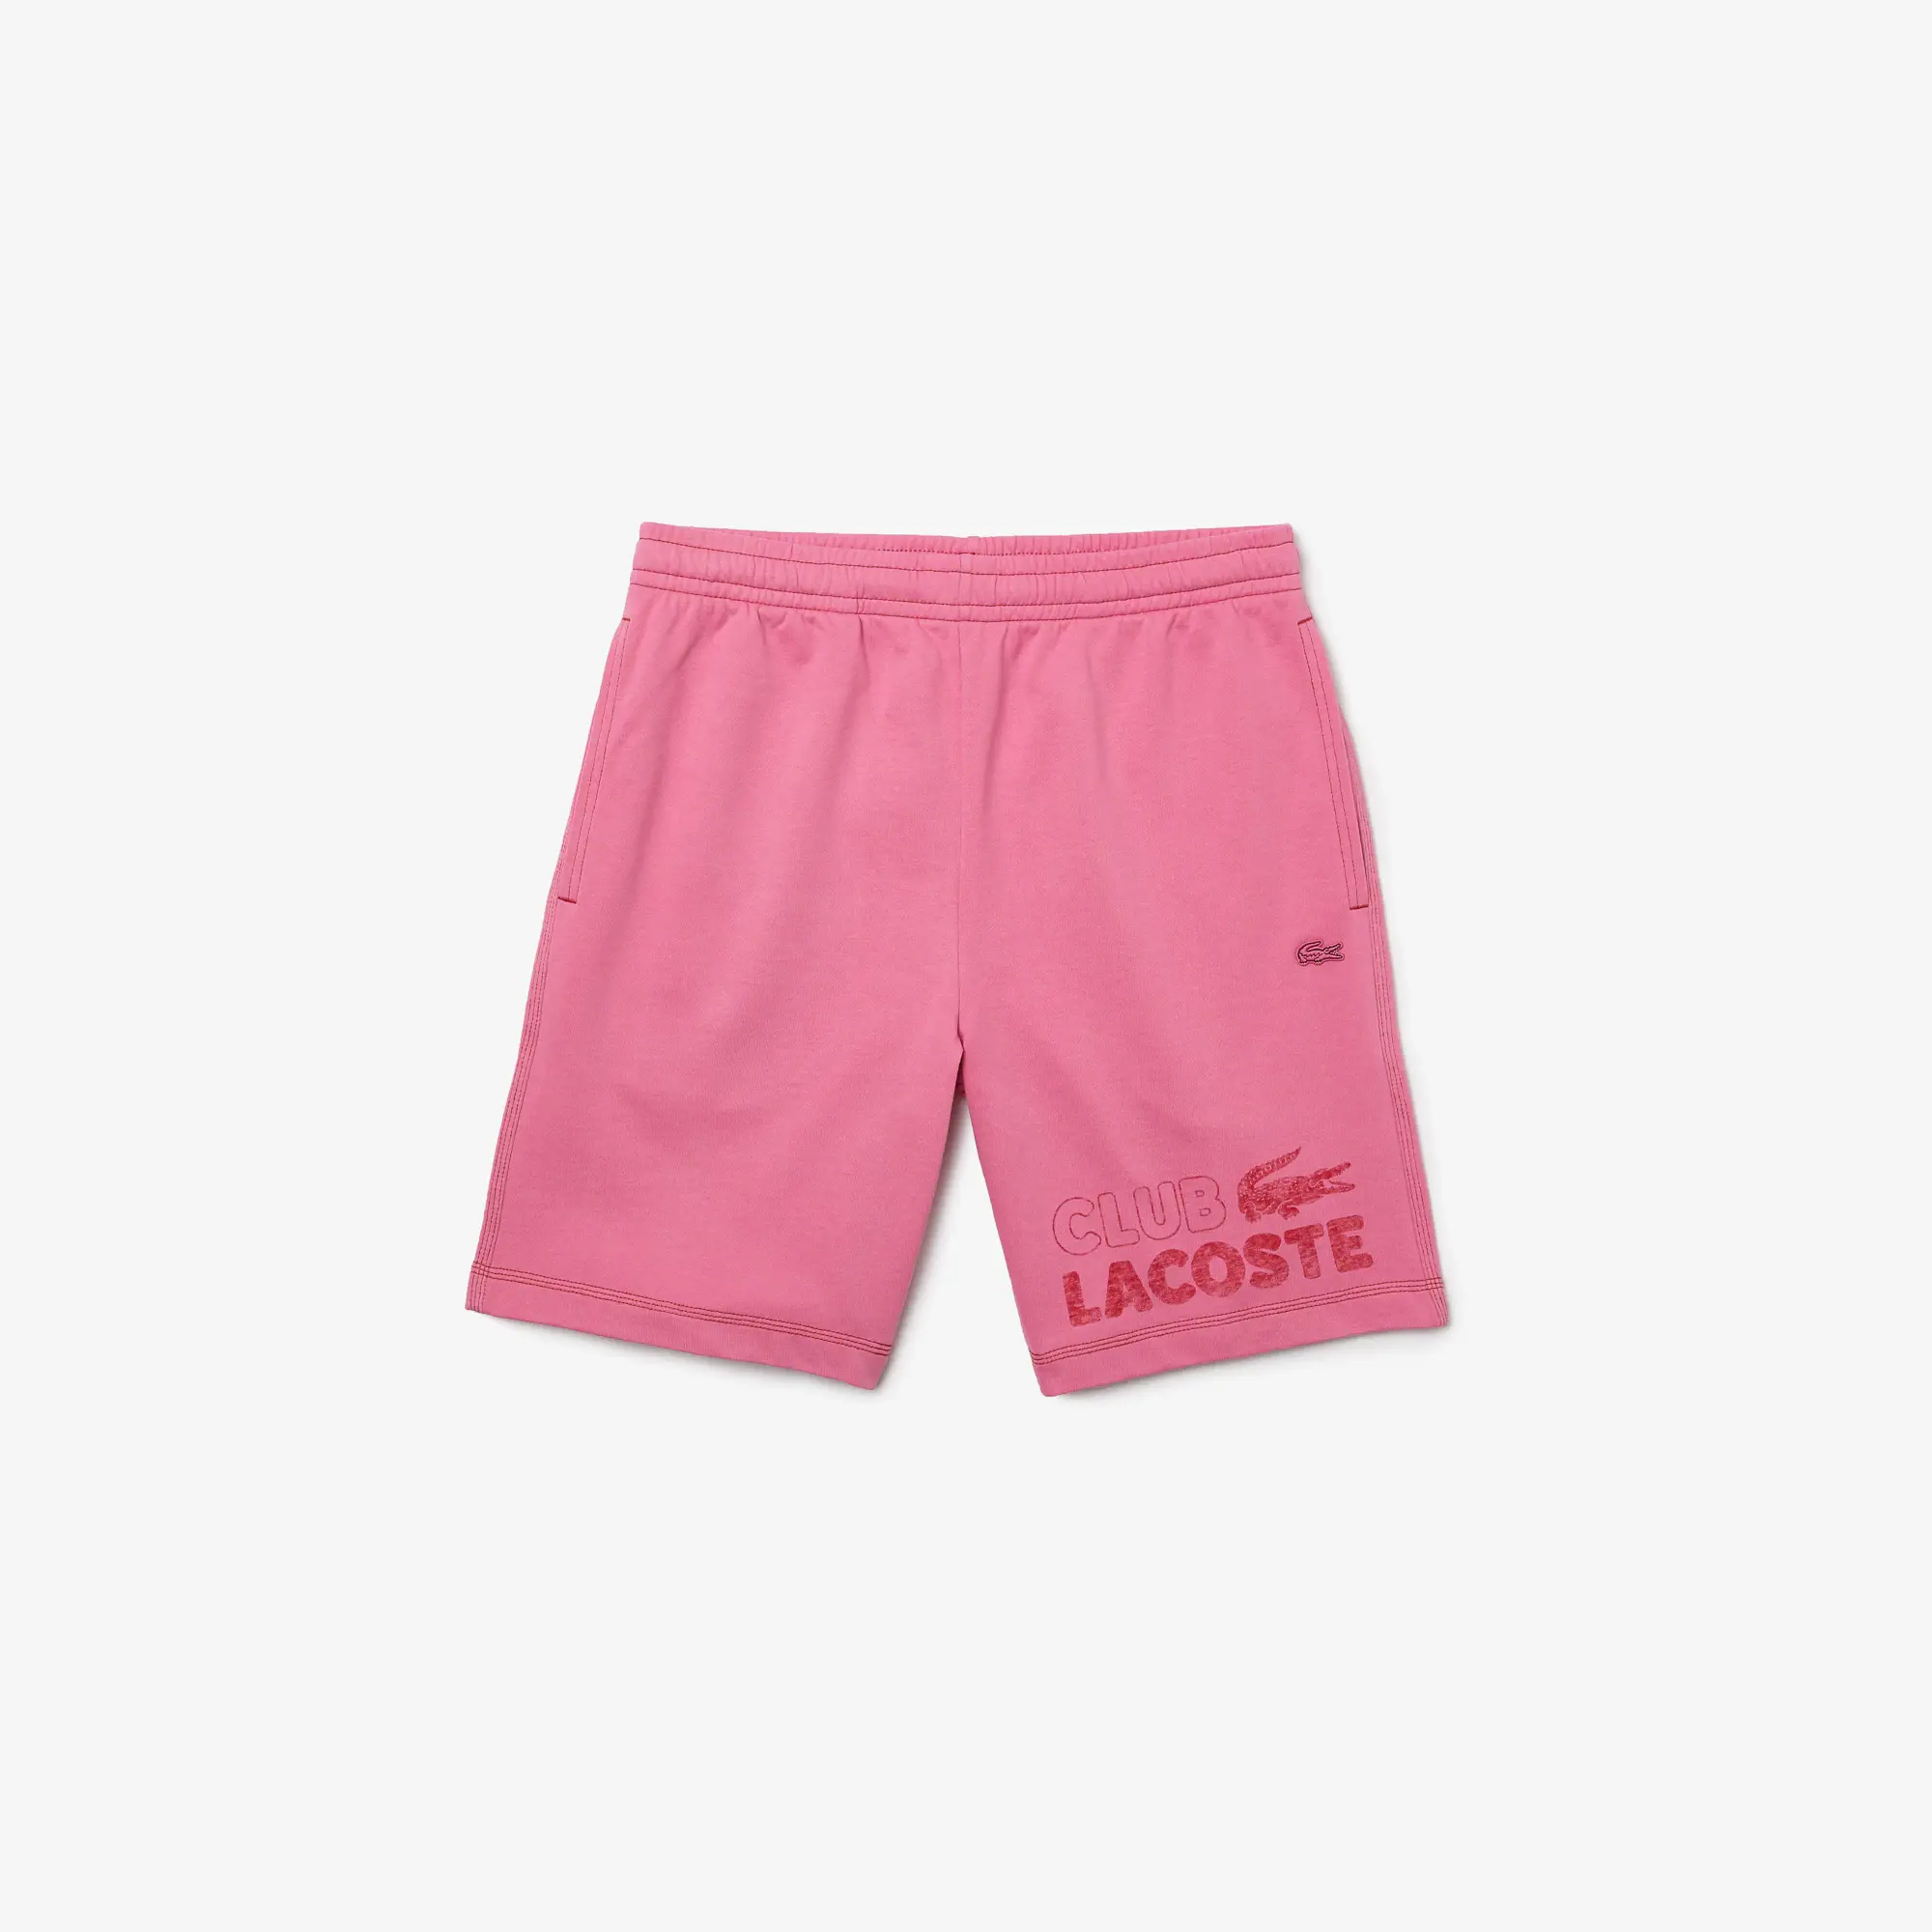 Lacoste Men’s Regular Fit Contrast Branding Fleece Shorts. 2